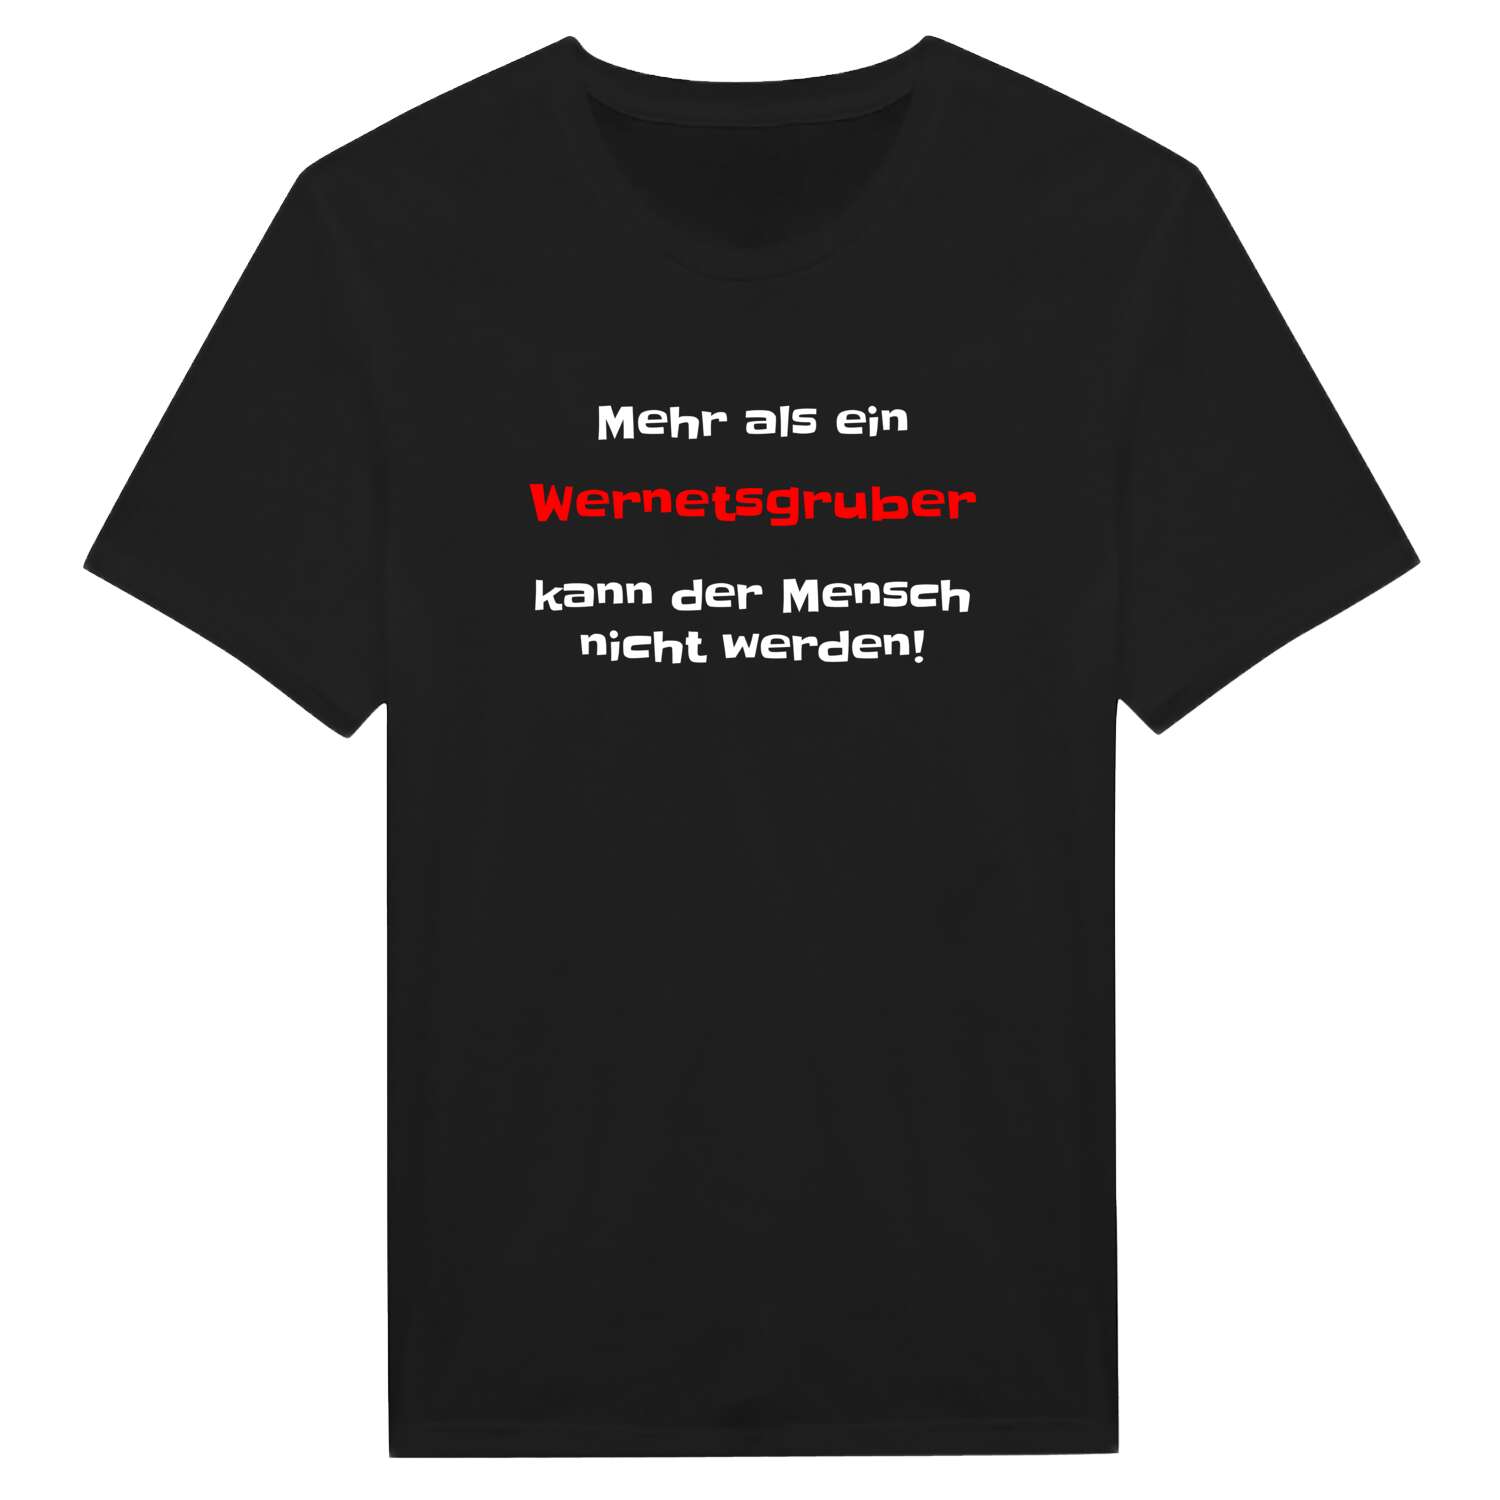 Wernetsgrub T-Shirt »Mehr als ein«